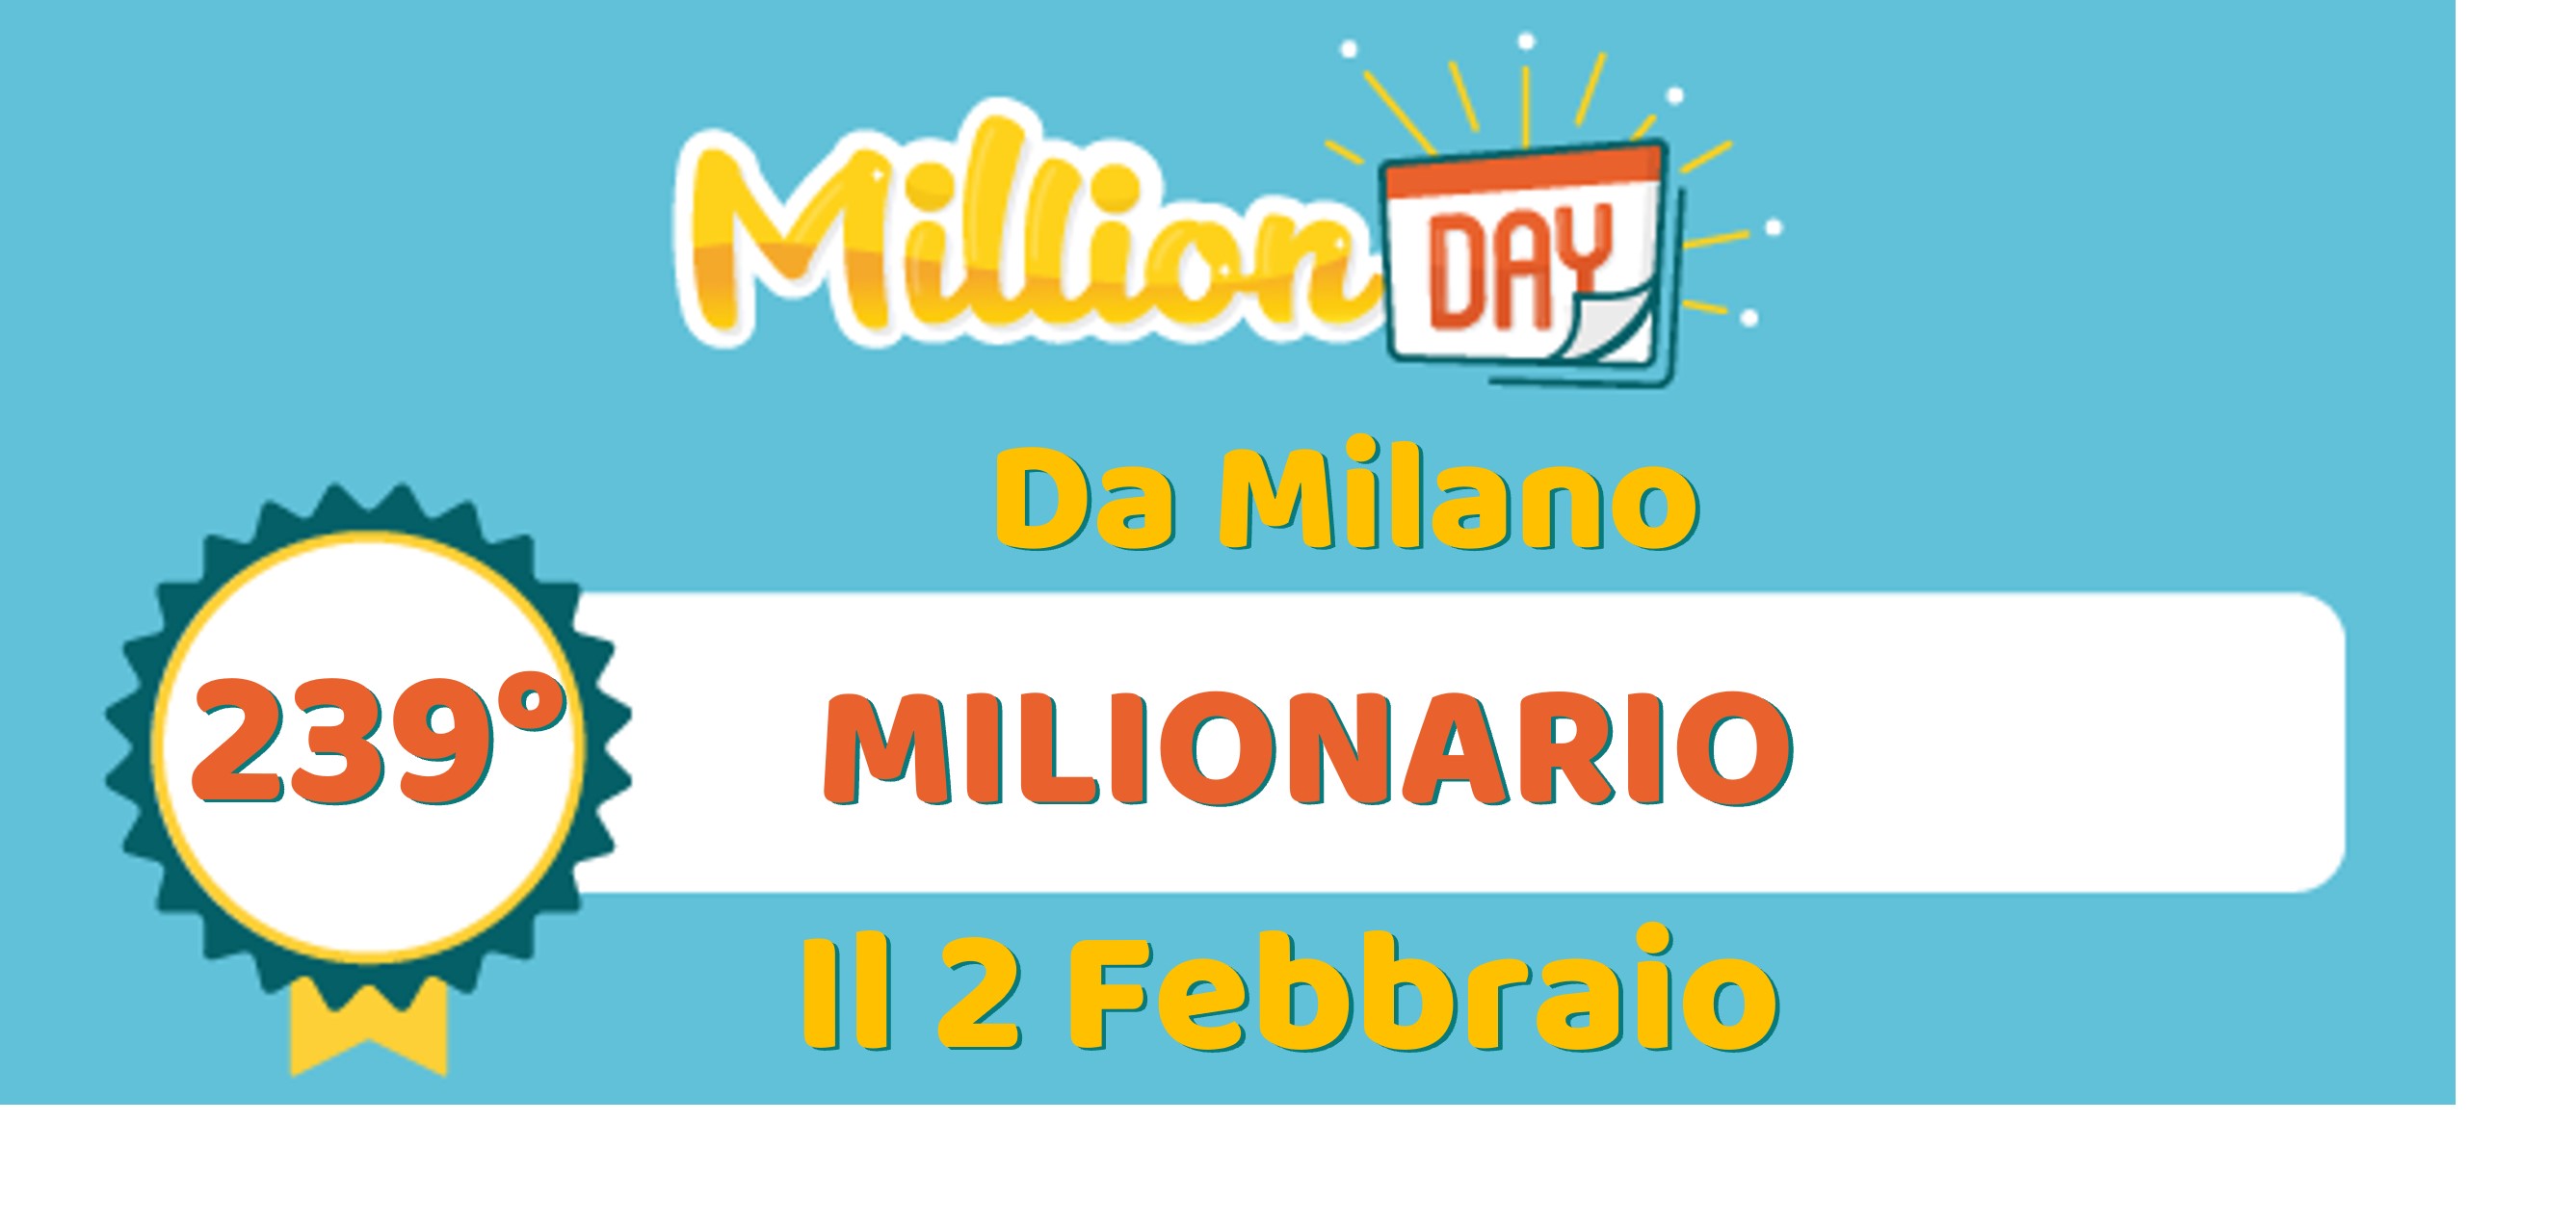 vincita MillionDAY da Milano